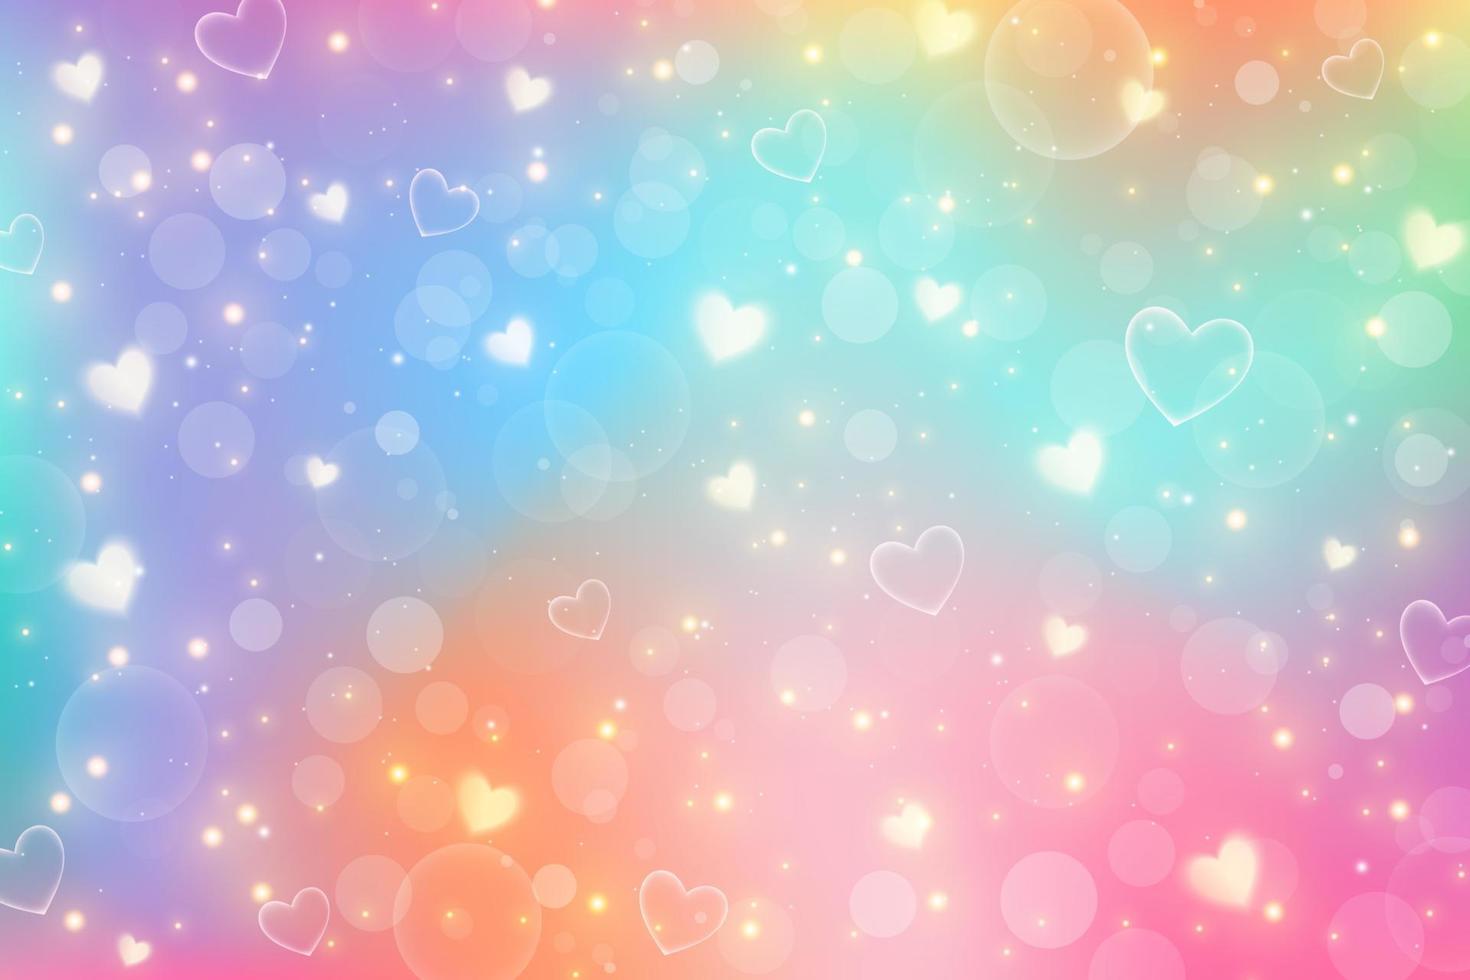 fantasia estrelas unicórnio abstrato com estrelas e corações. céu roxo do arco-íris com glitter. papel de parede de doces de cor pastel. ilustração em vetor mágica.